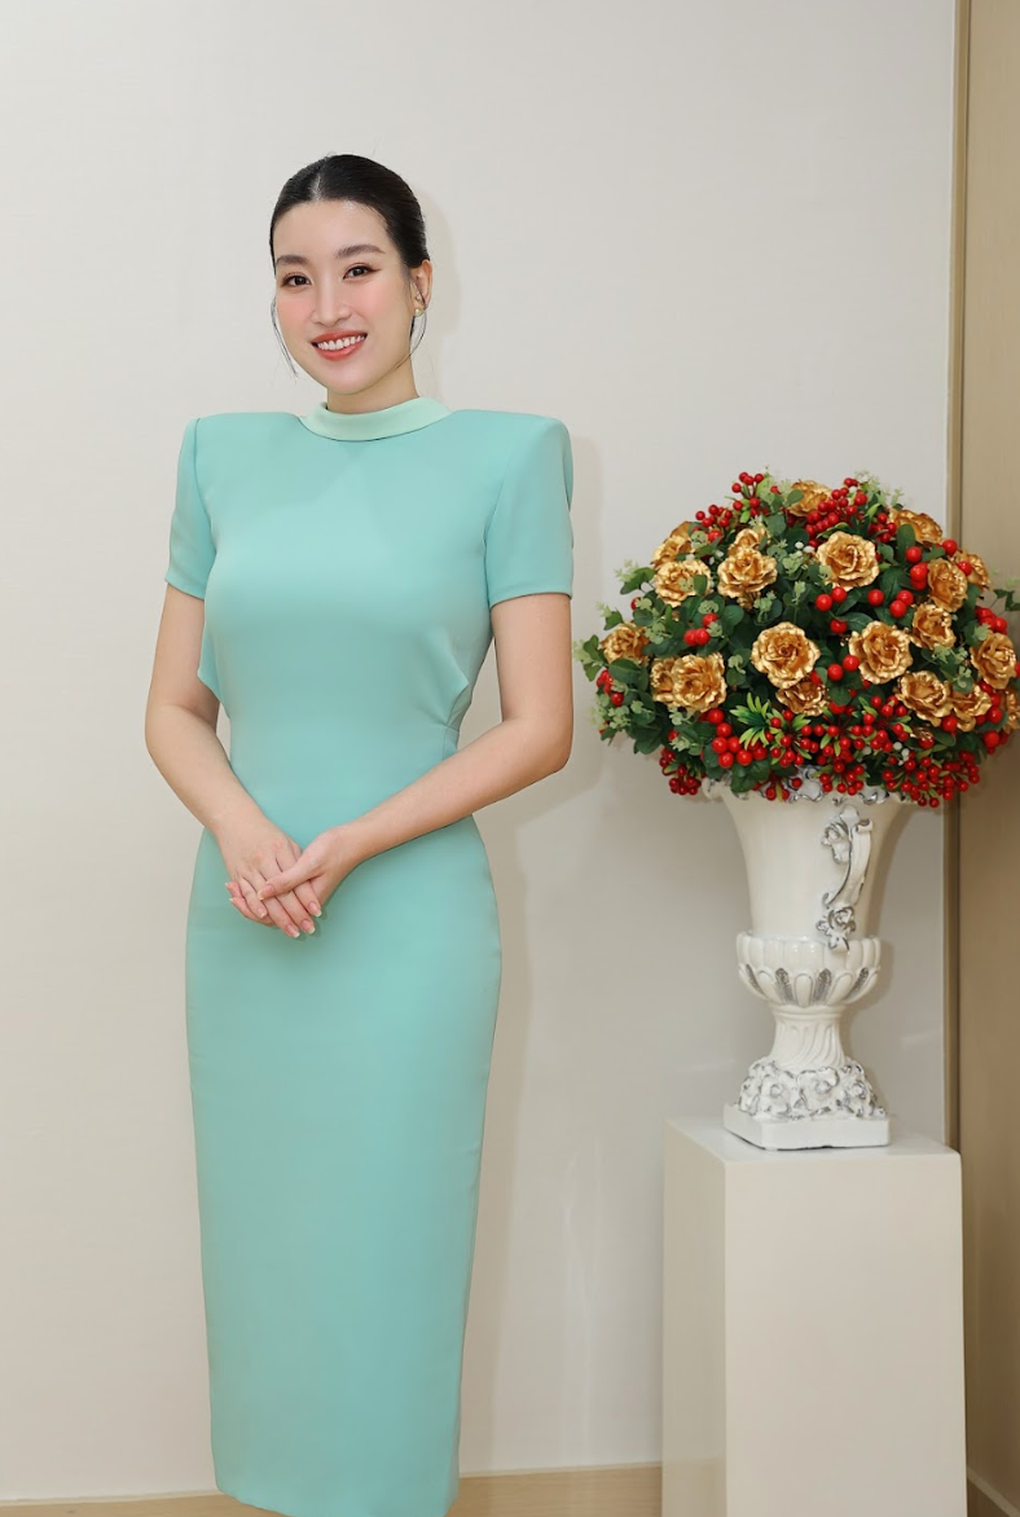 Hoa hậu Đỗ Mỹ Linh 'chiếm sóng' trong loạt ảnh ngày cuối năm - Ảnh 3.